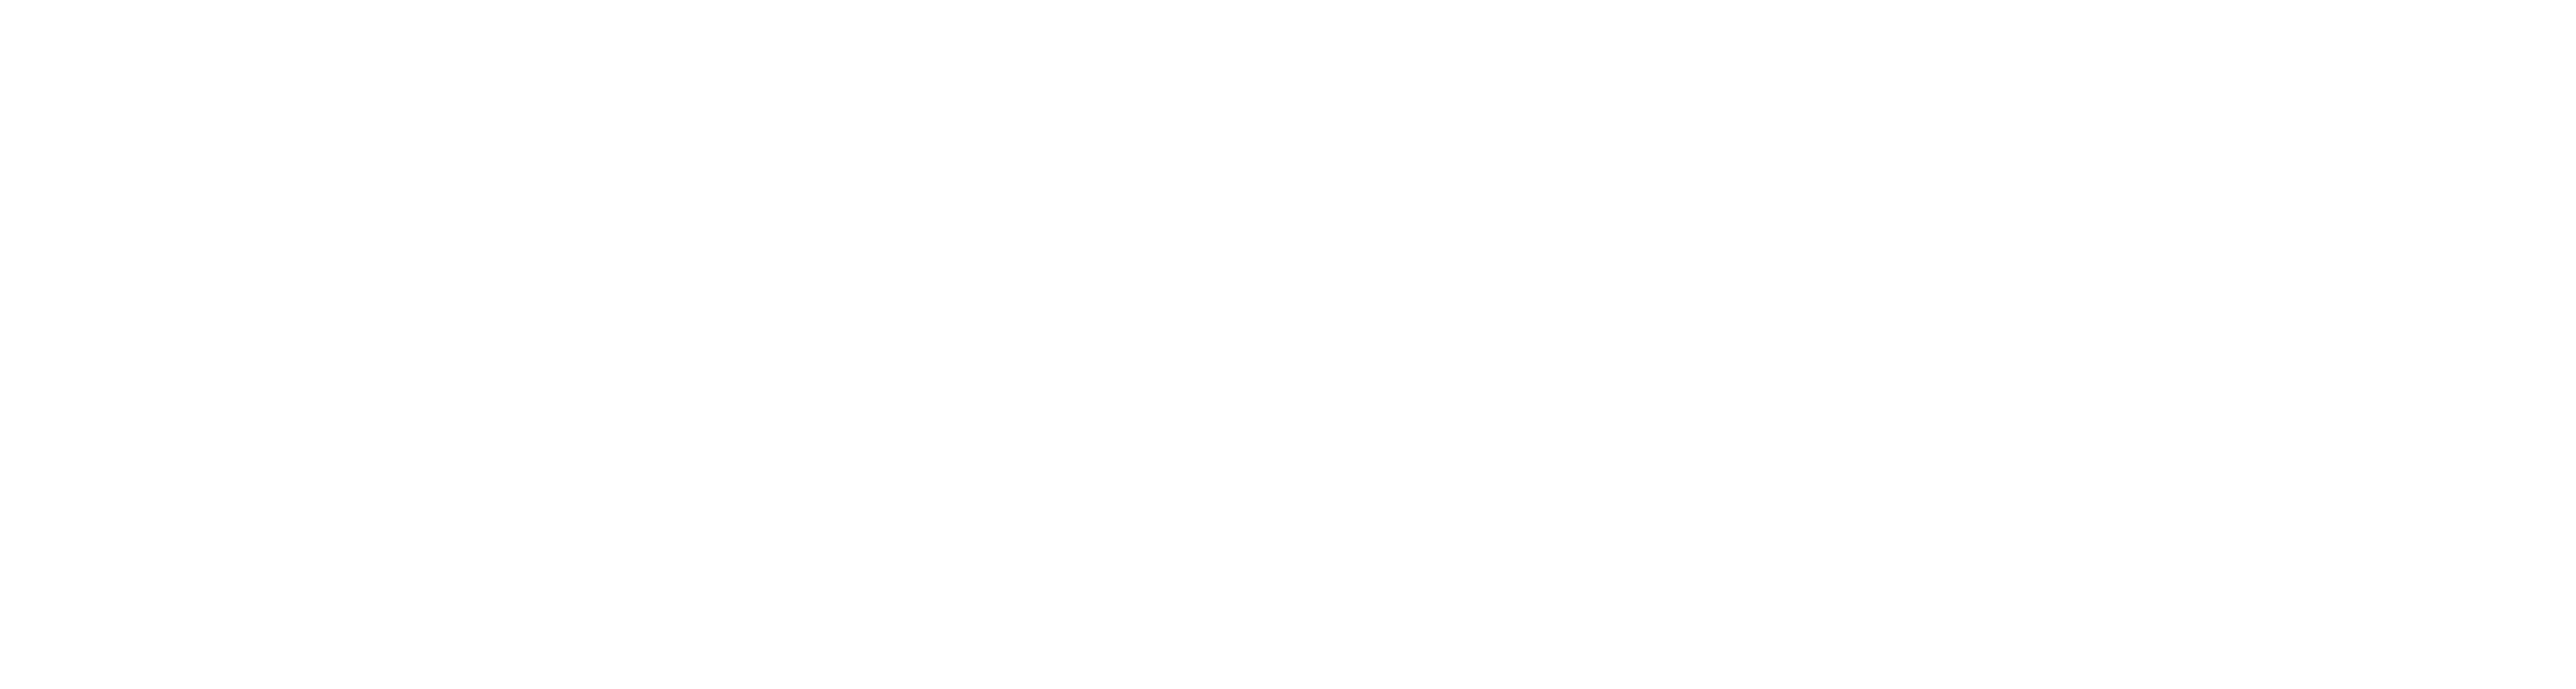 Excise Sub logo